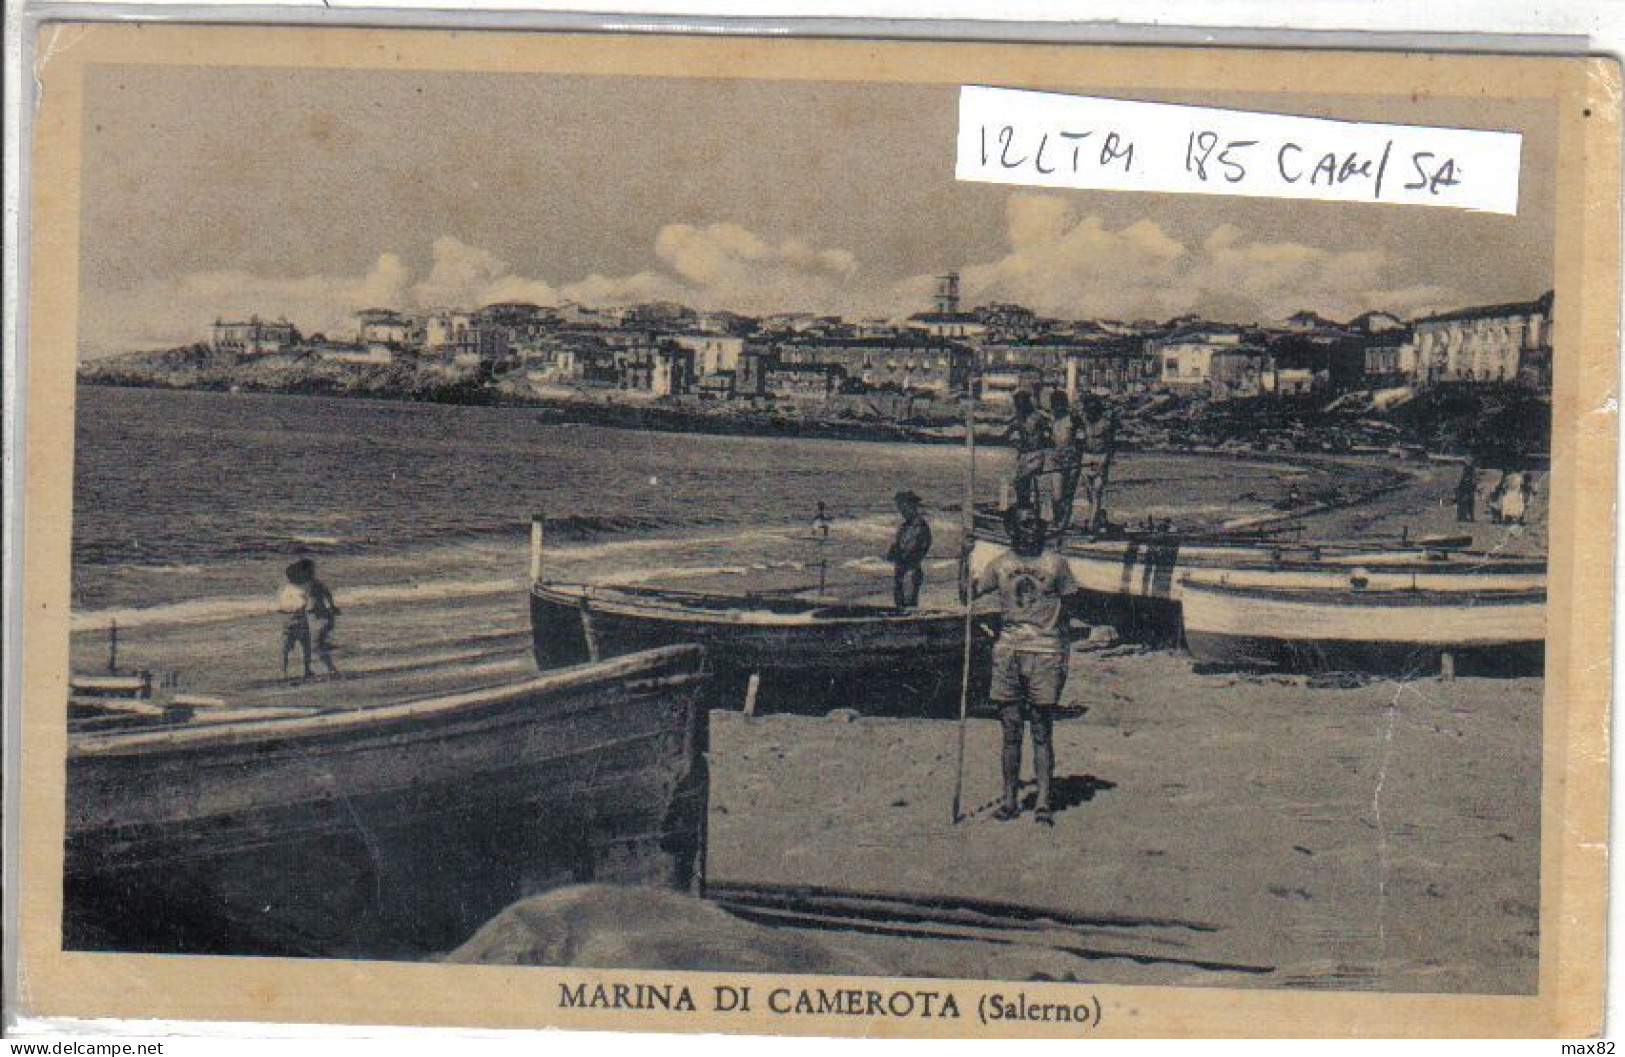 MARINA DI CAMEROTA - Salerno